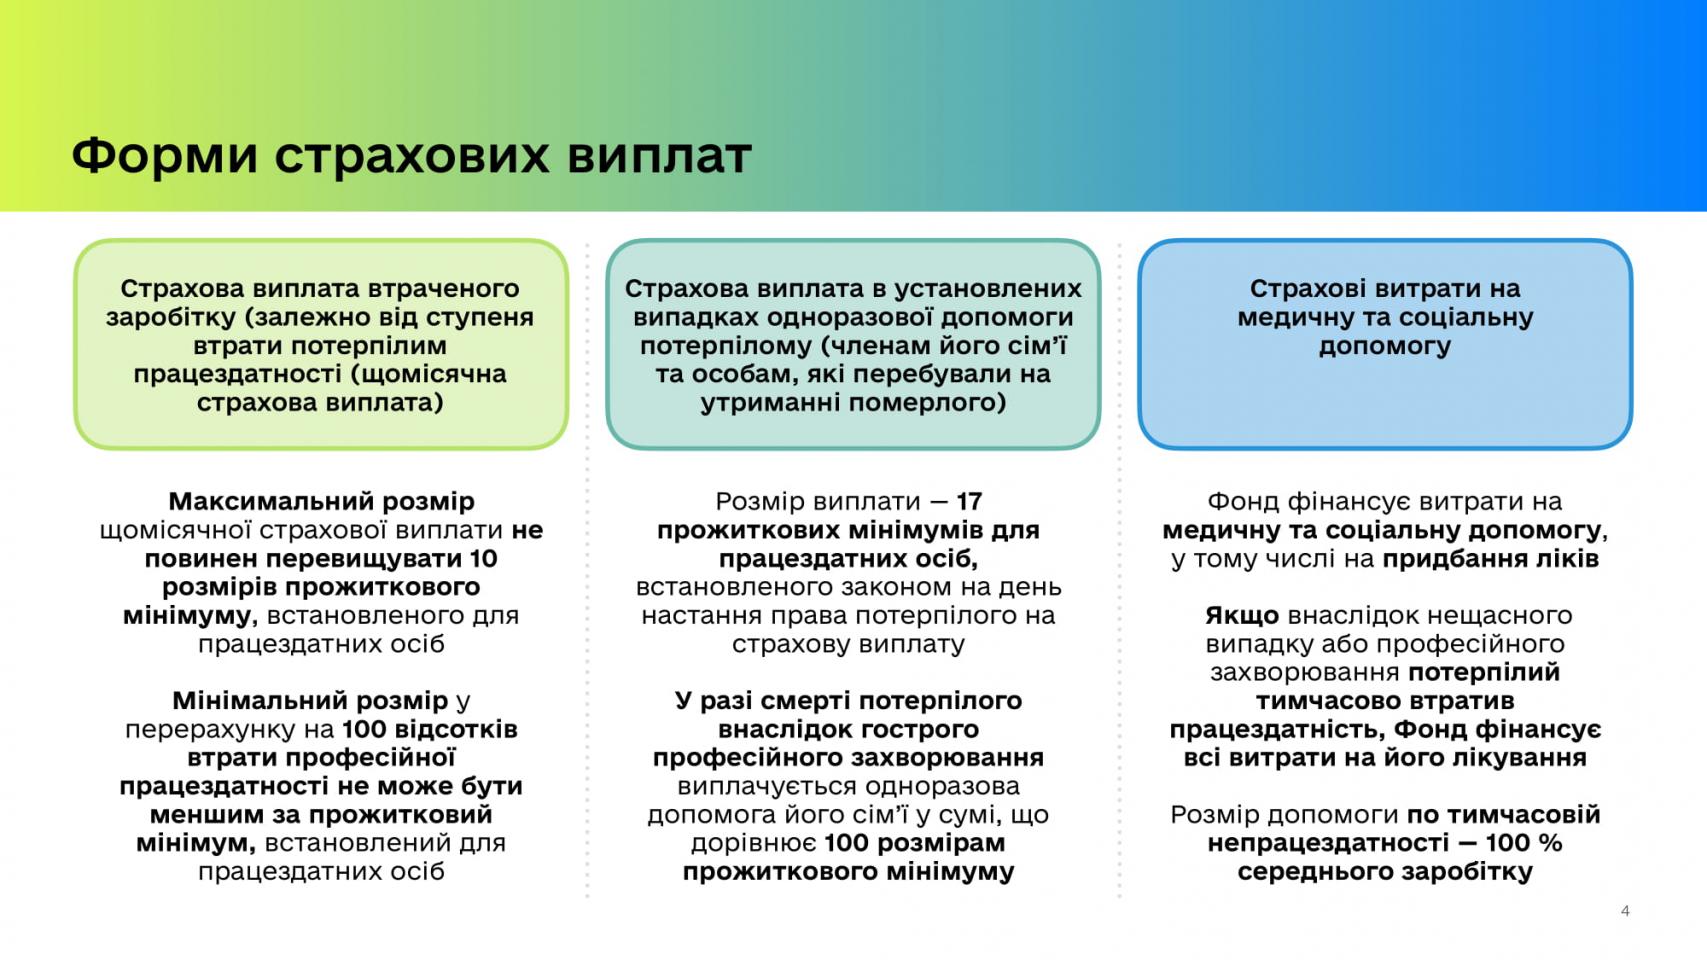 http://dunrada.gov.ua/uploadfile/archive_news/2020/04/28/2020-04-28_3910/images/images-71793.jpg